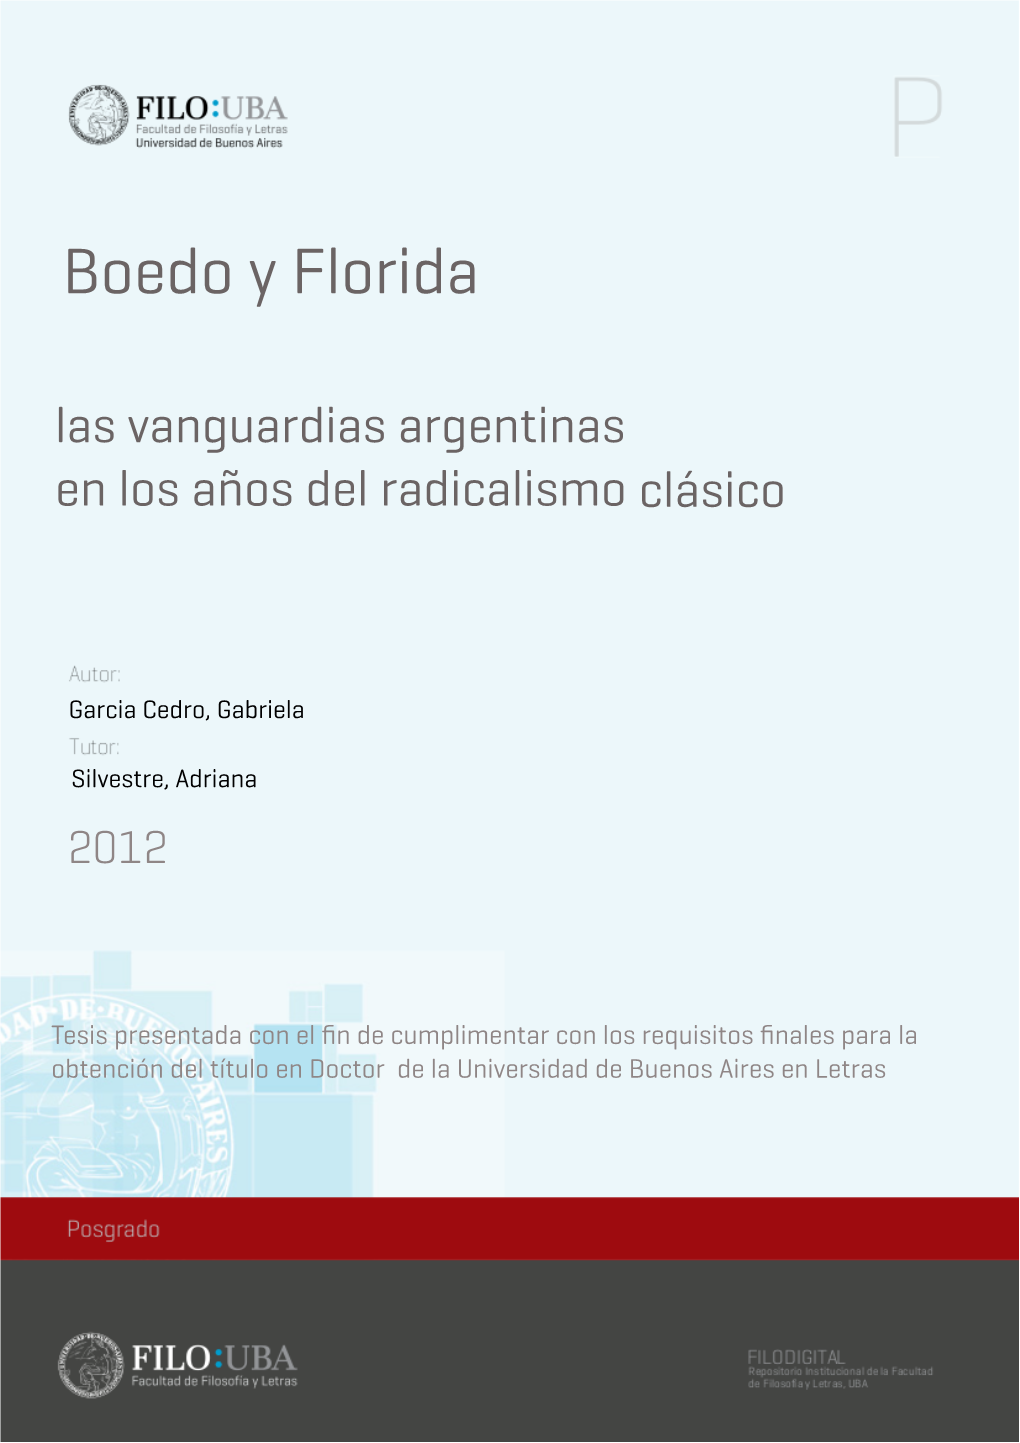 Boedo Y Florida Las Vanguardias Argentinas En Los Años Del Radicalismo Clásico